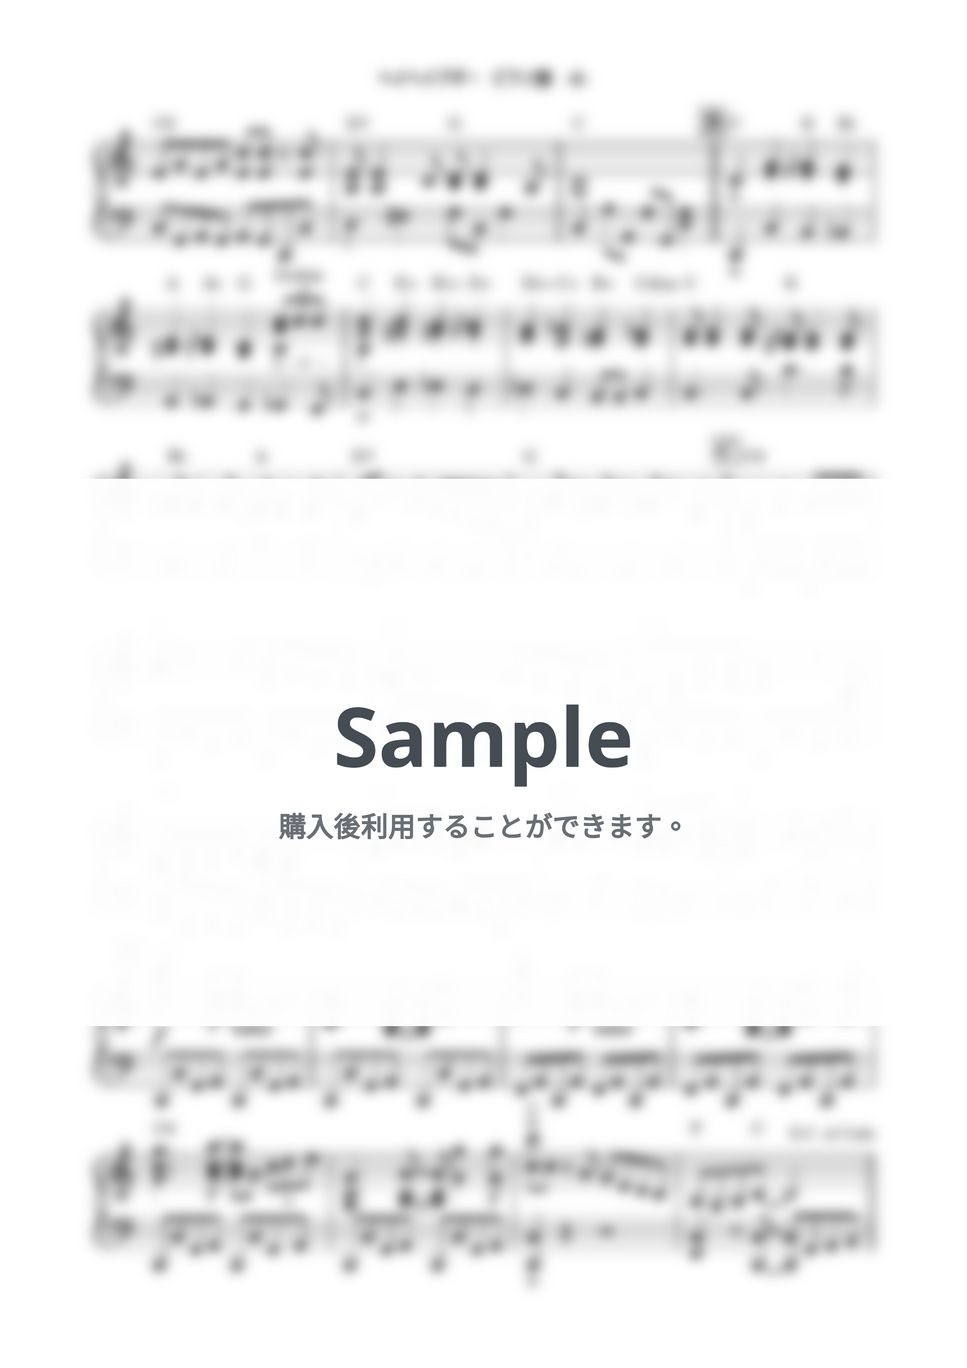 笠置シヅ子 - ヘイヘイブギ (ピアノソロ) by 鈴木建作